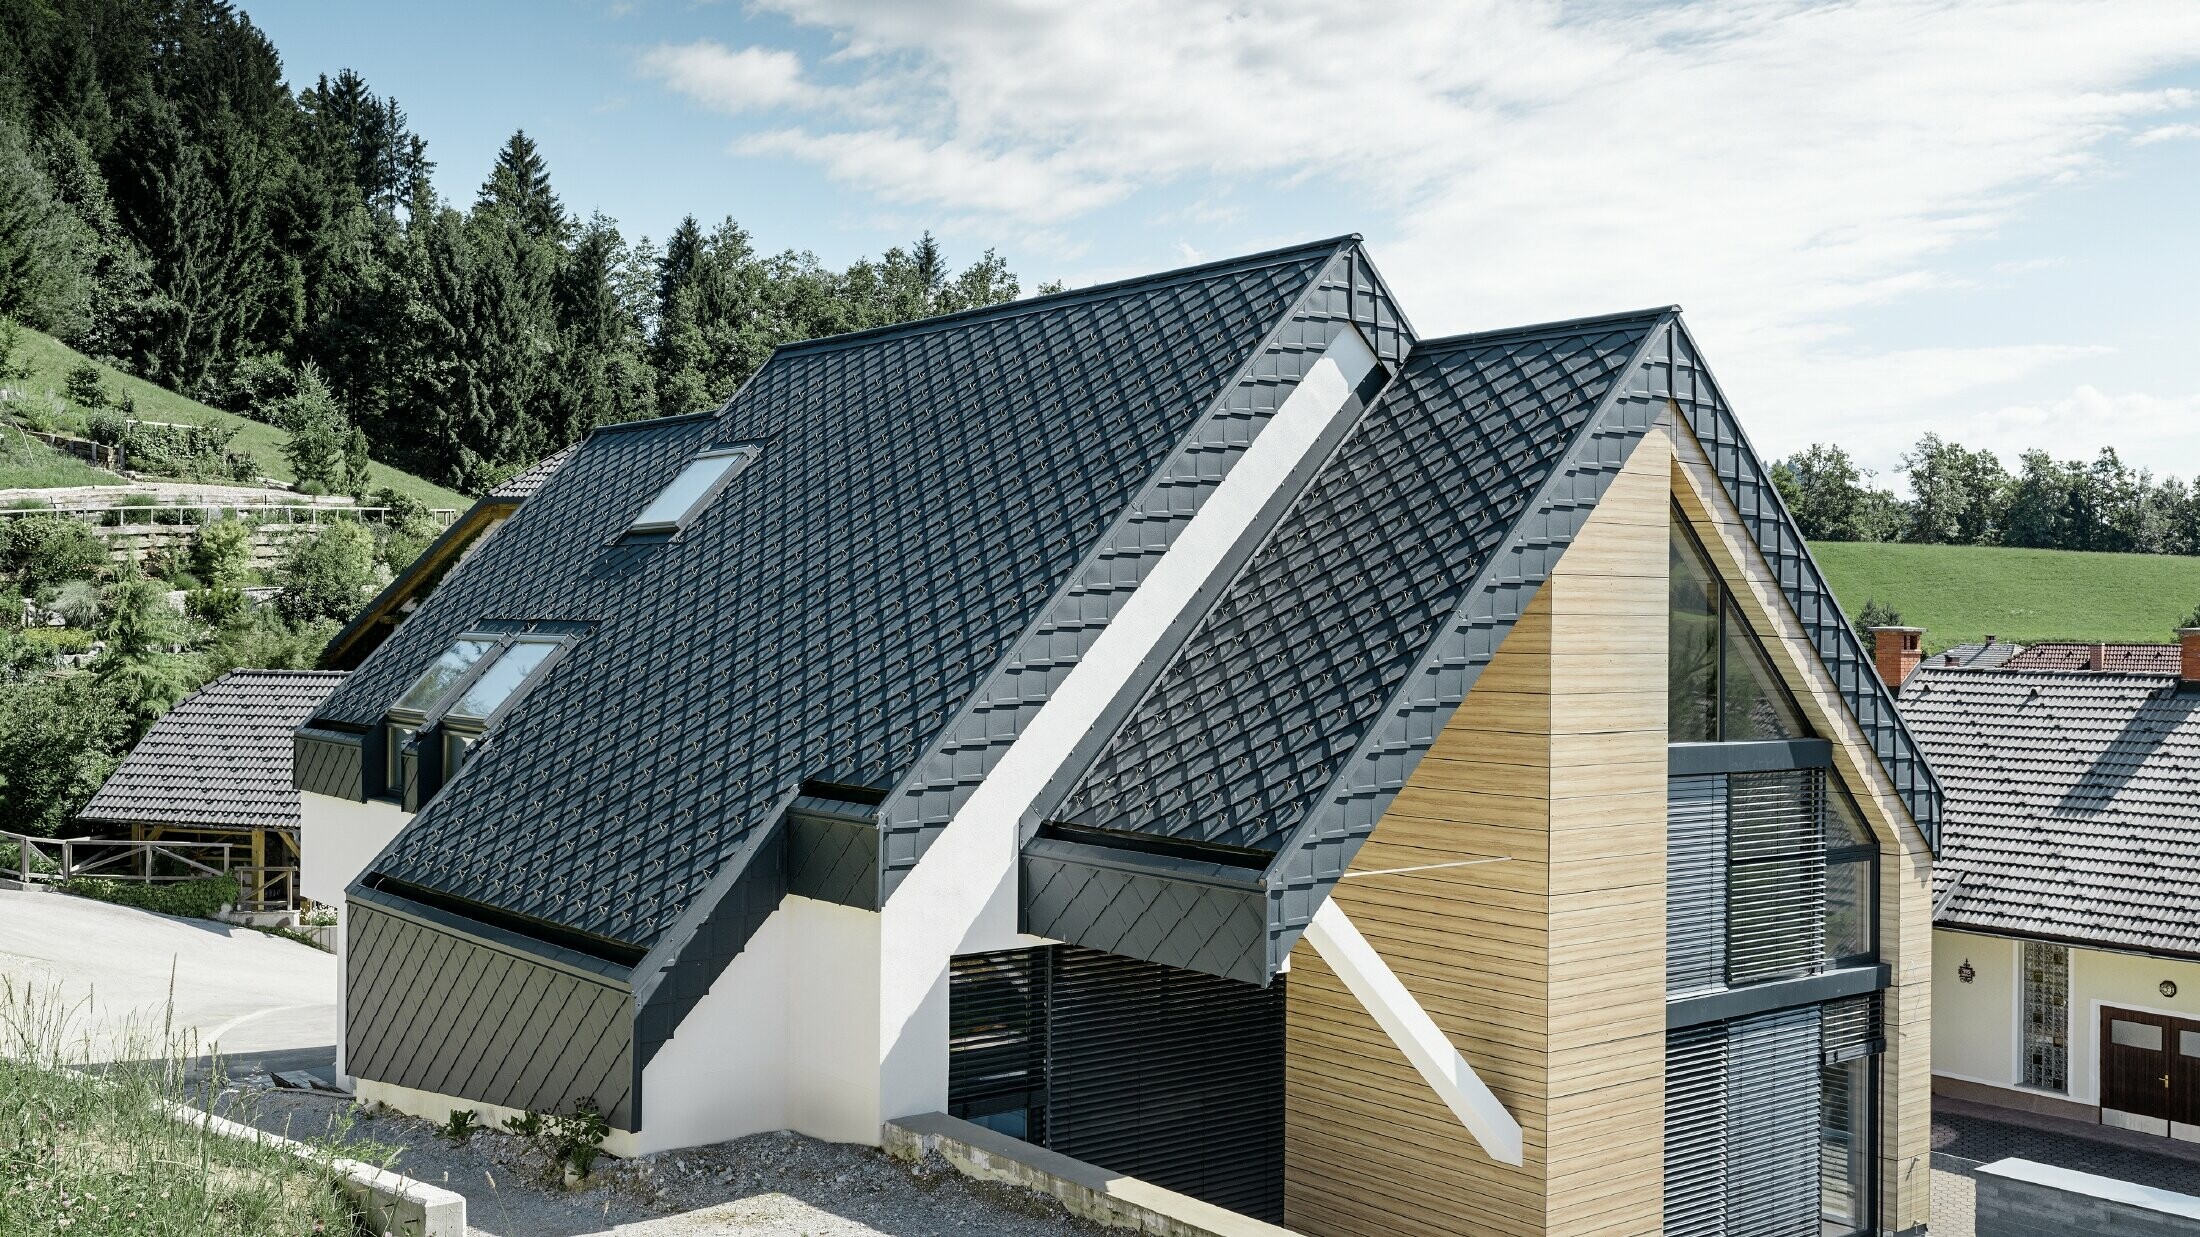 Maison individuelle avec toit à deux versants sans saillie, avec façade imitation bois et toit en aluminium couleur anthracite